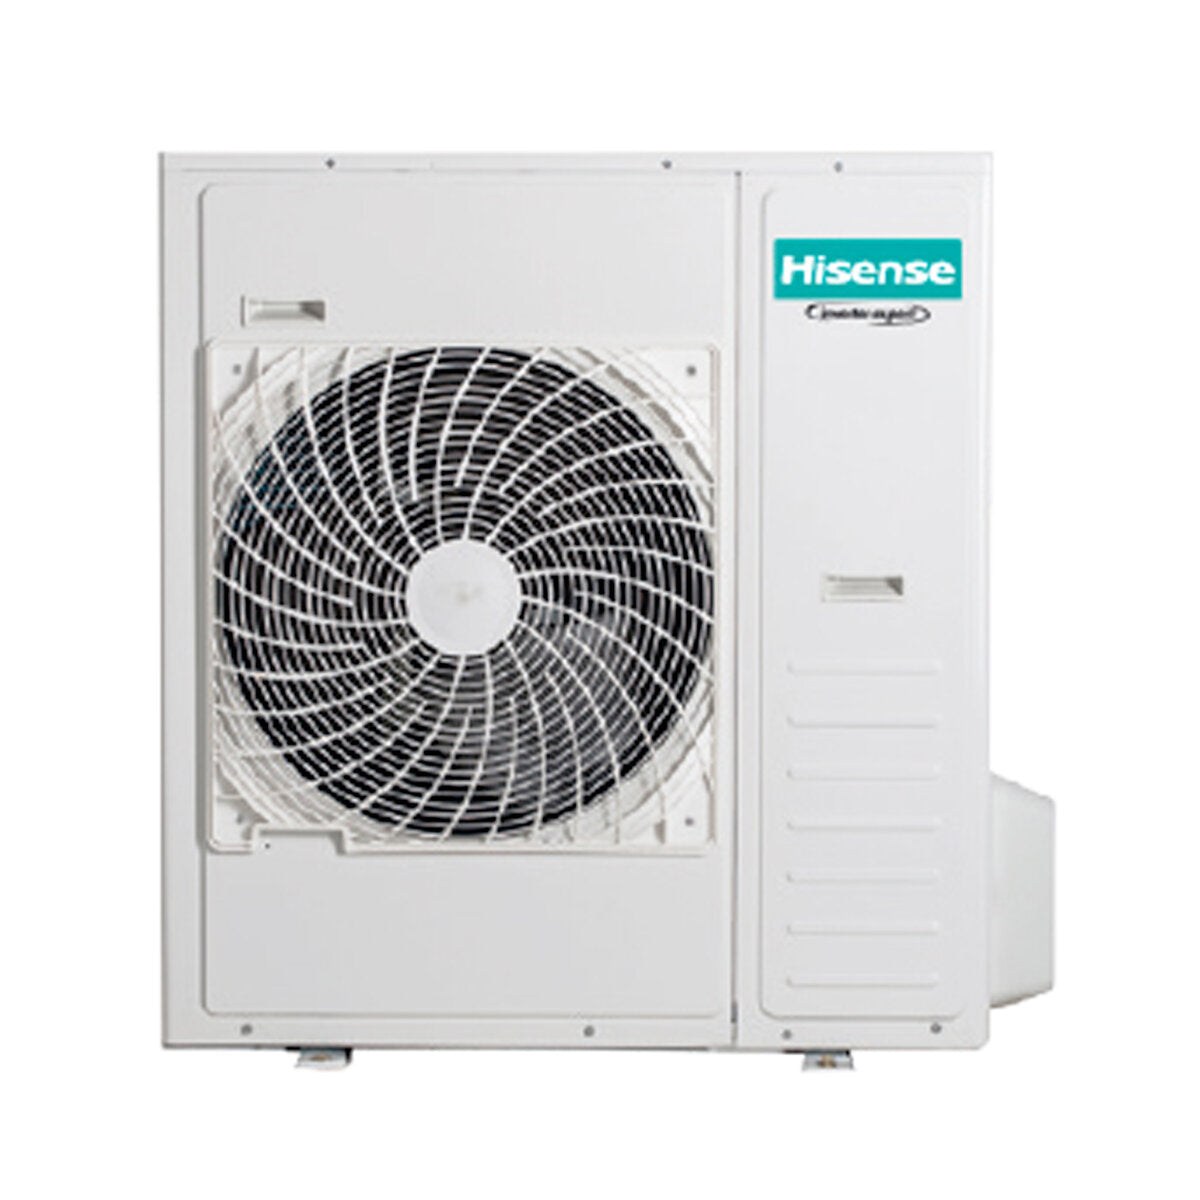 Hisense Hi-Comfort quadri split air conditioner 7000 + 7000 + 18000 + 24000 BTU wifi inverter outdoor unit 12.5 kW